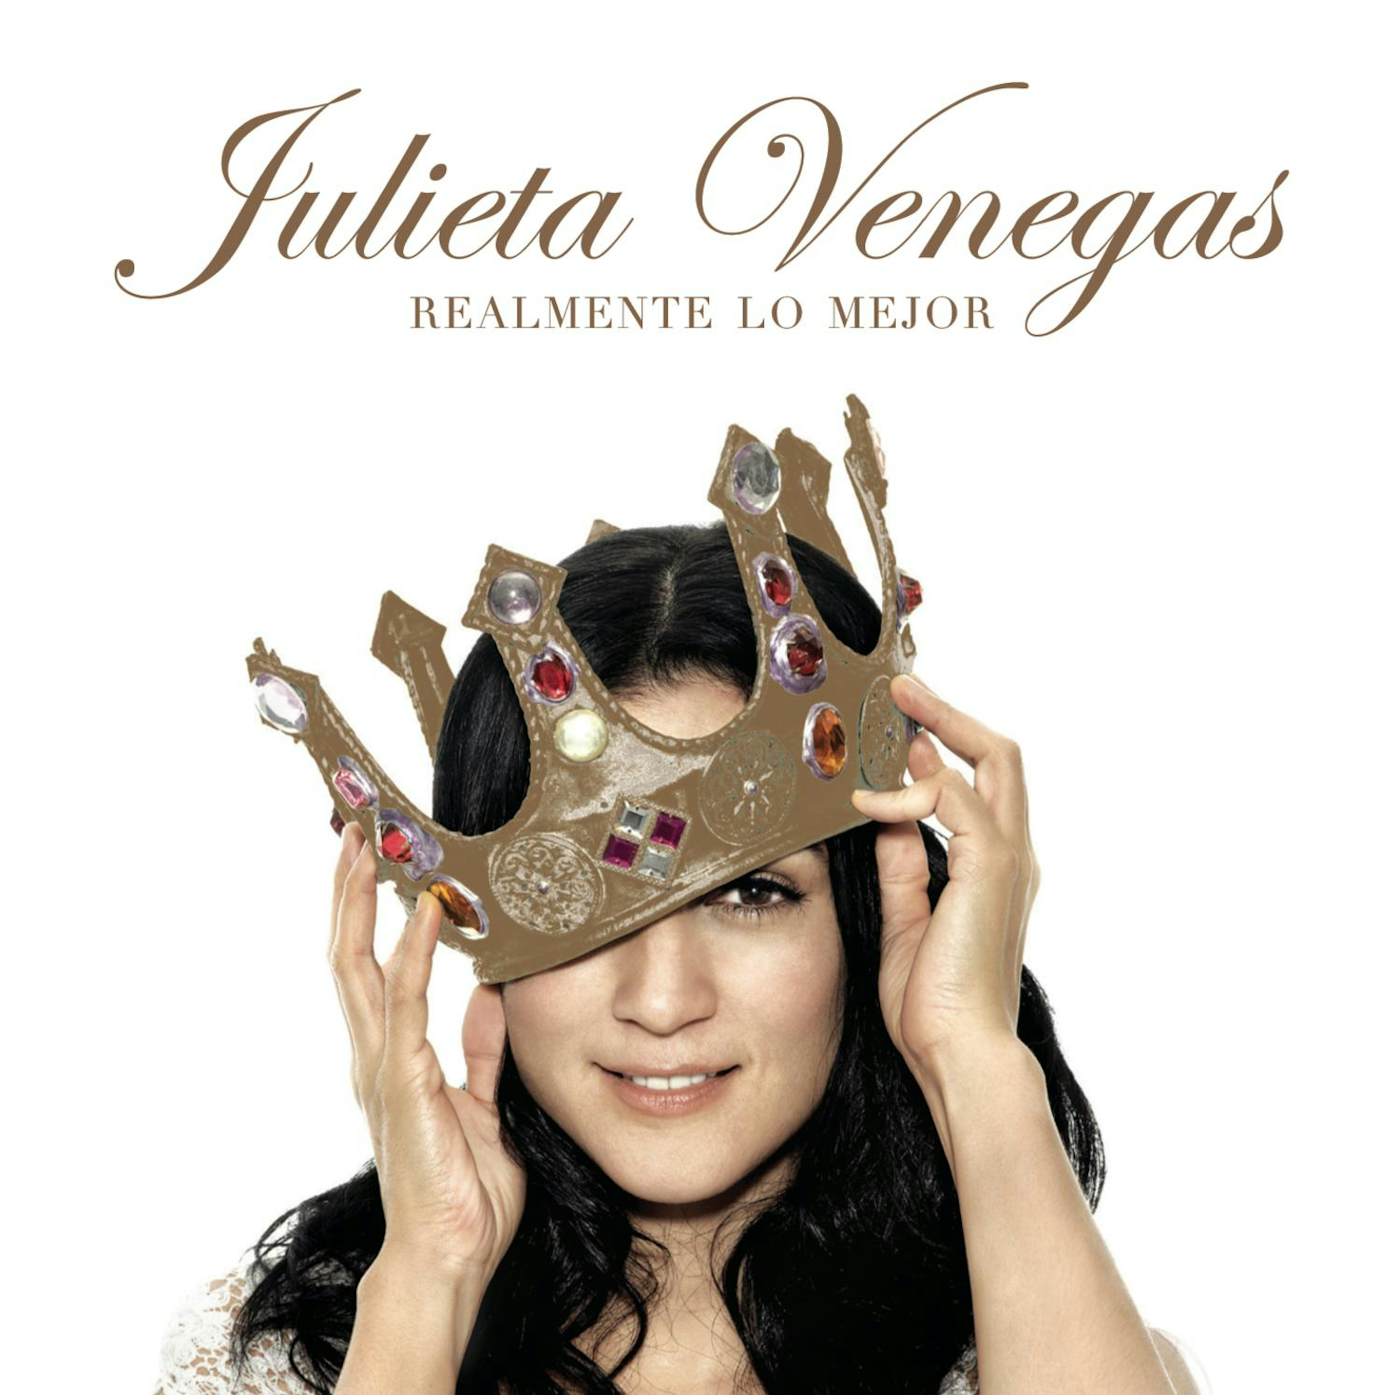 Julieta Venegas REALMENTE LO MEJOR CD